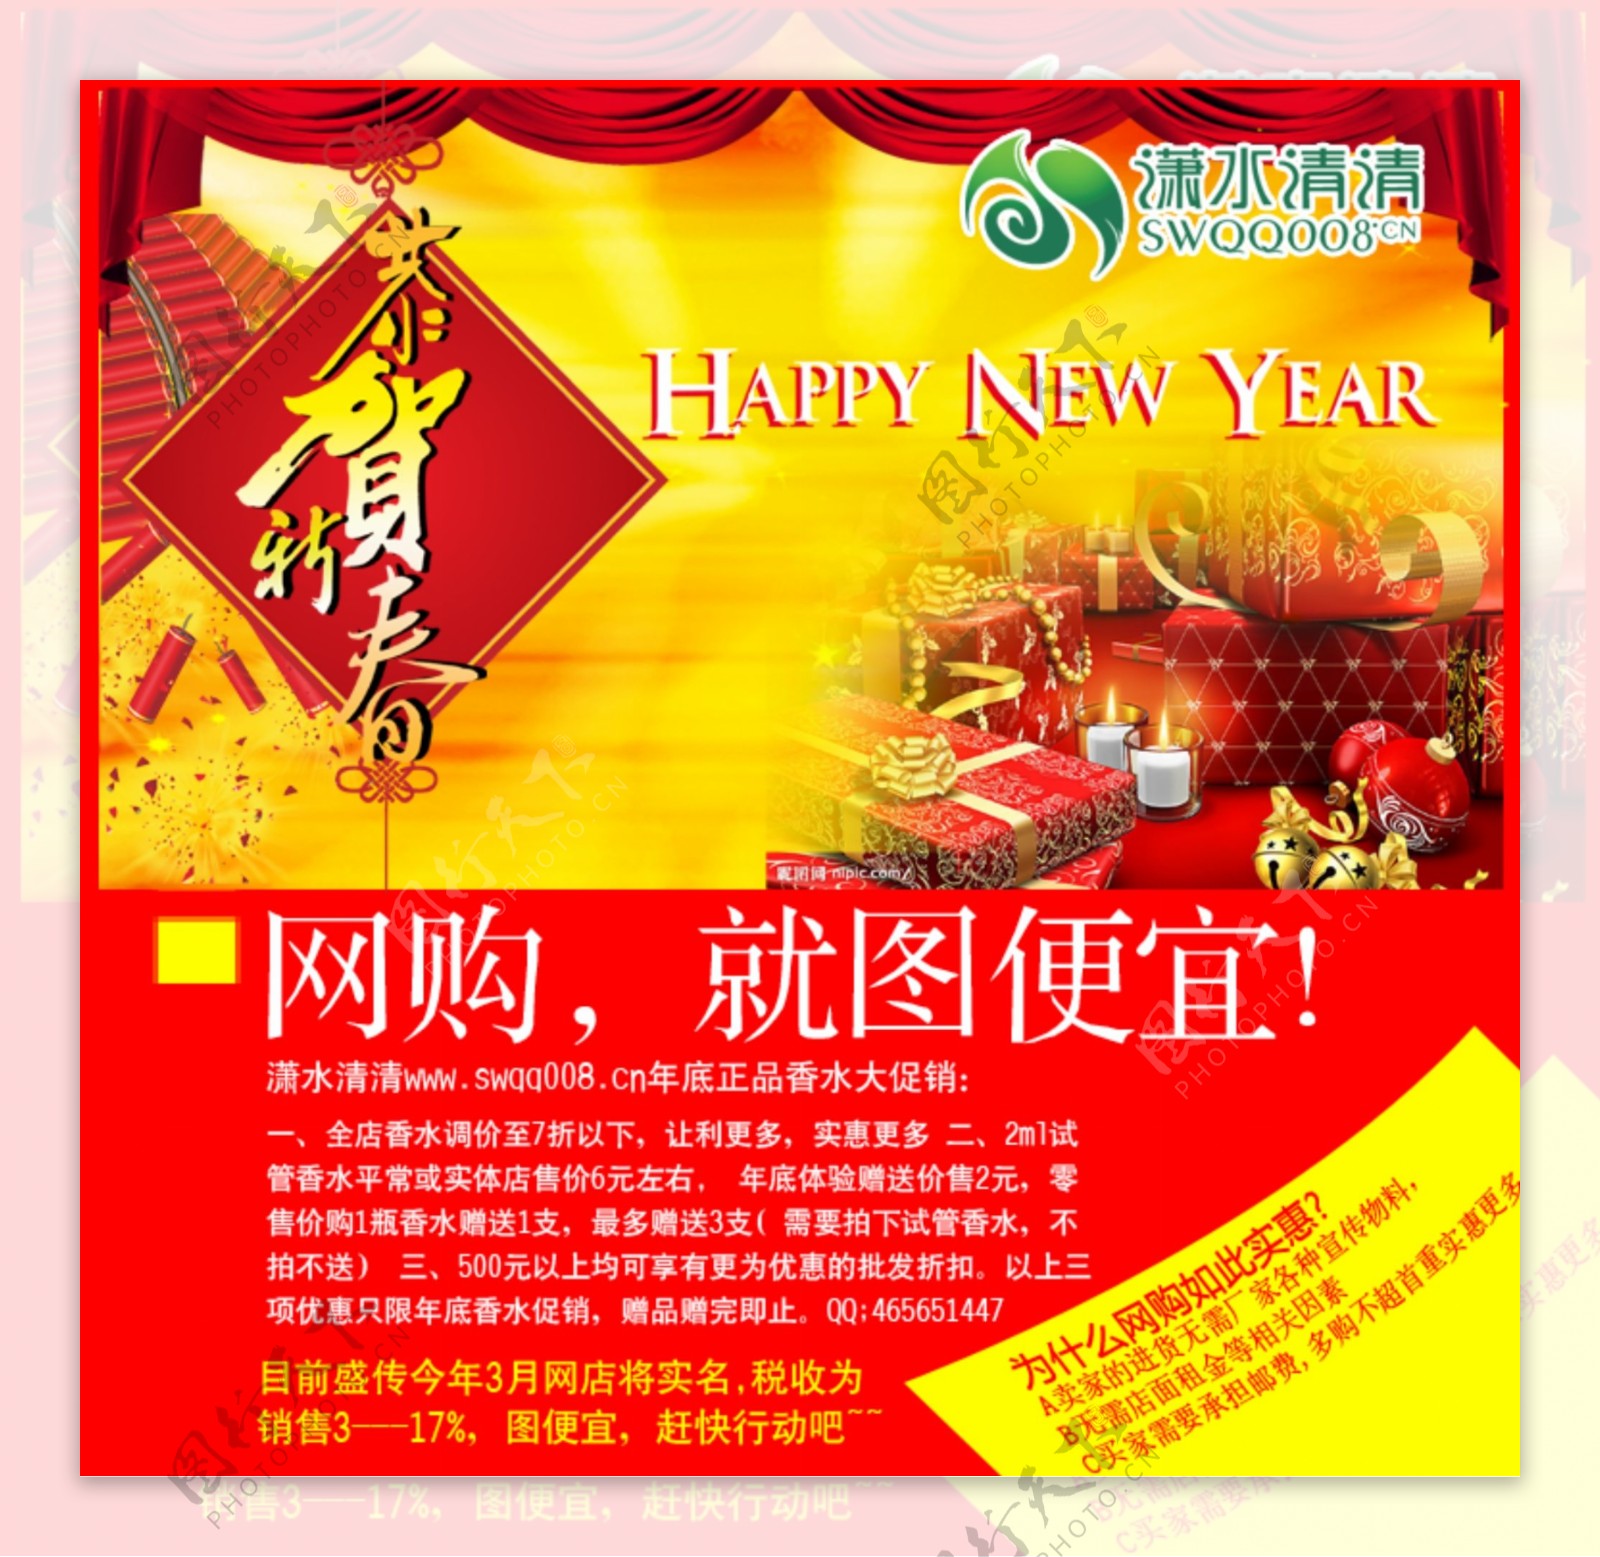 贝珠香香水春节促销网店广告图片模板下载